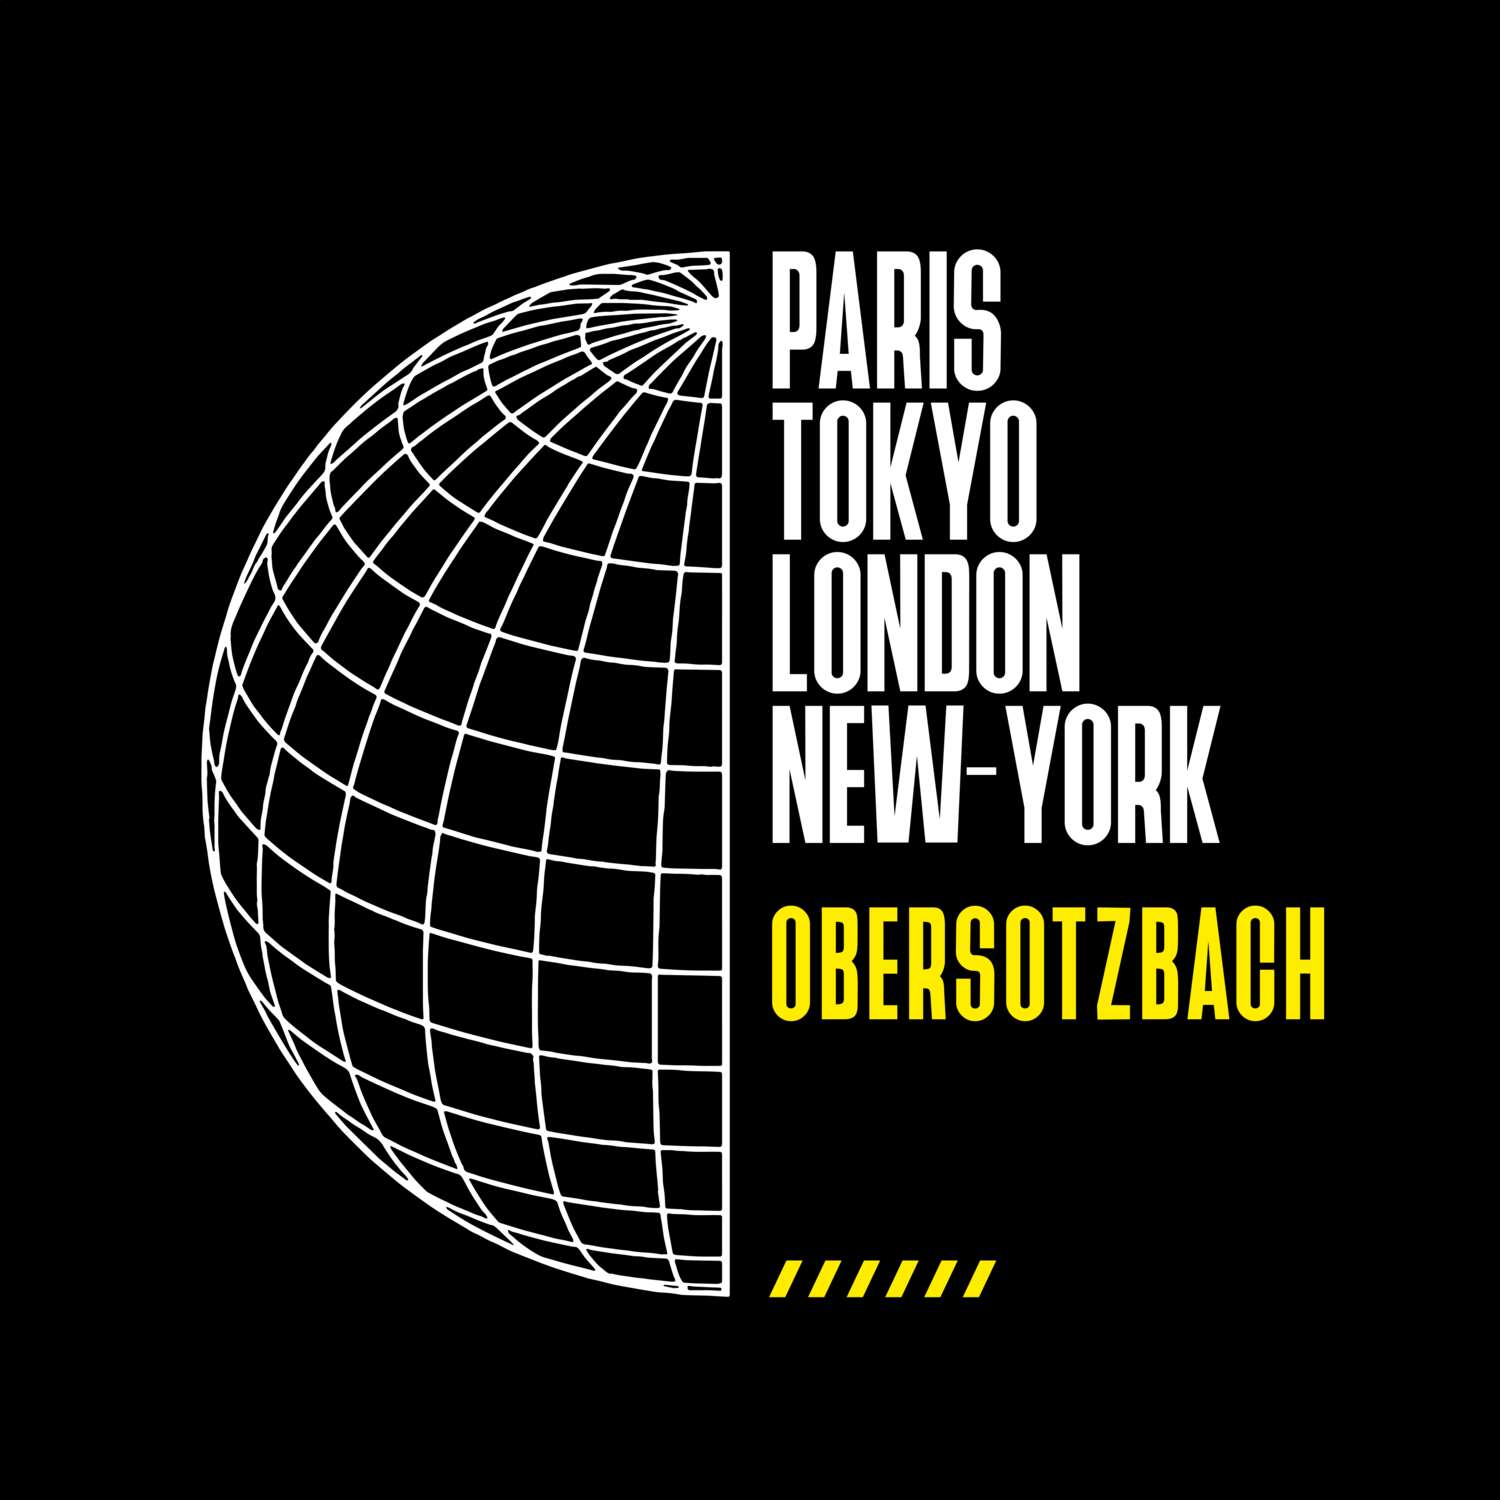 Obersotzbach T-Shirt »Paris Tokyo London«